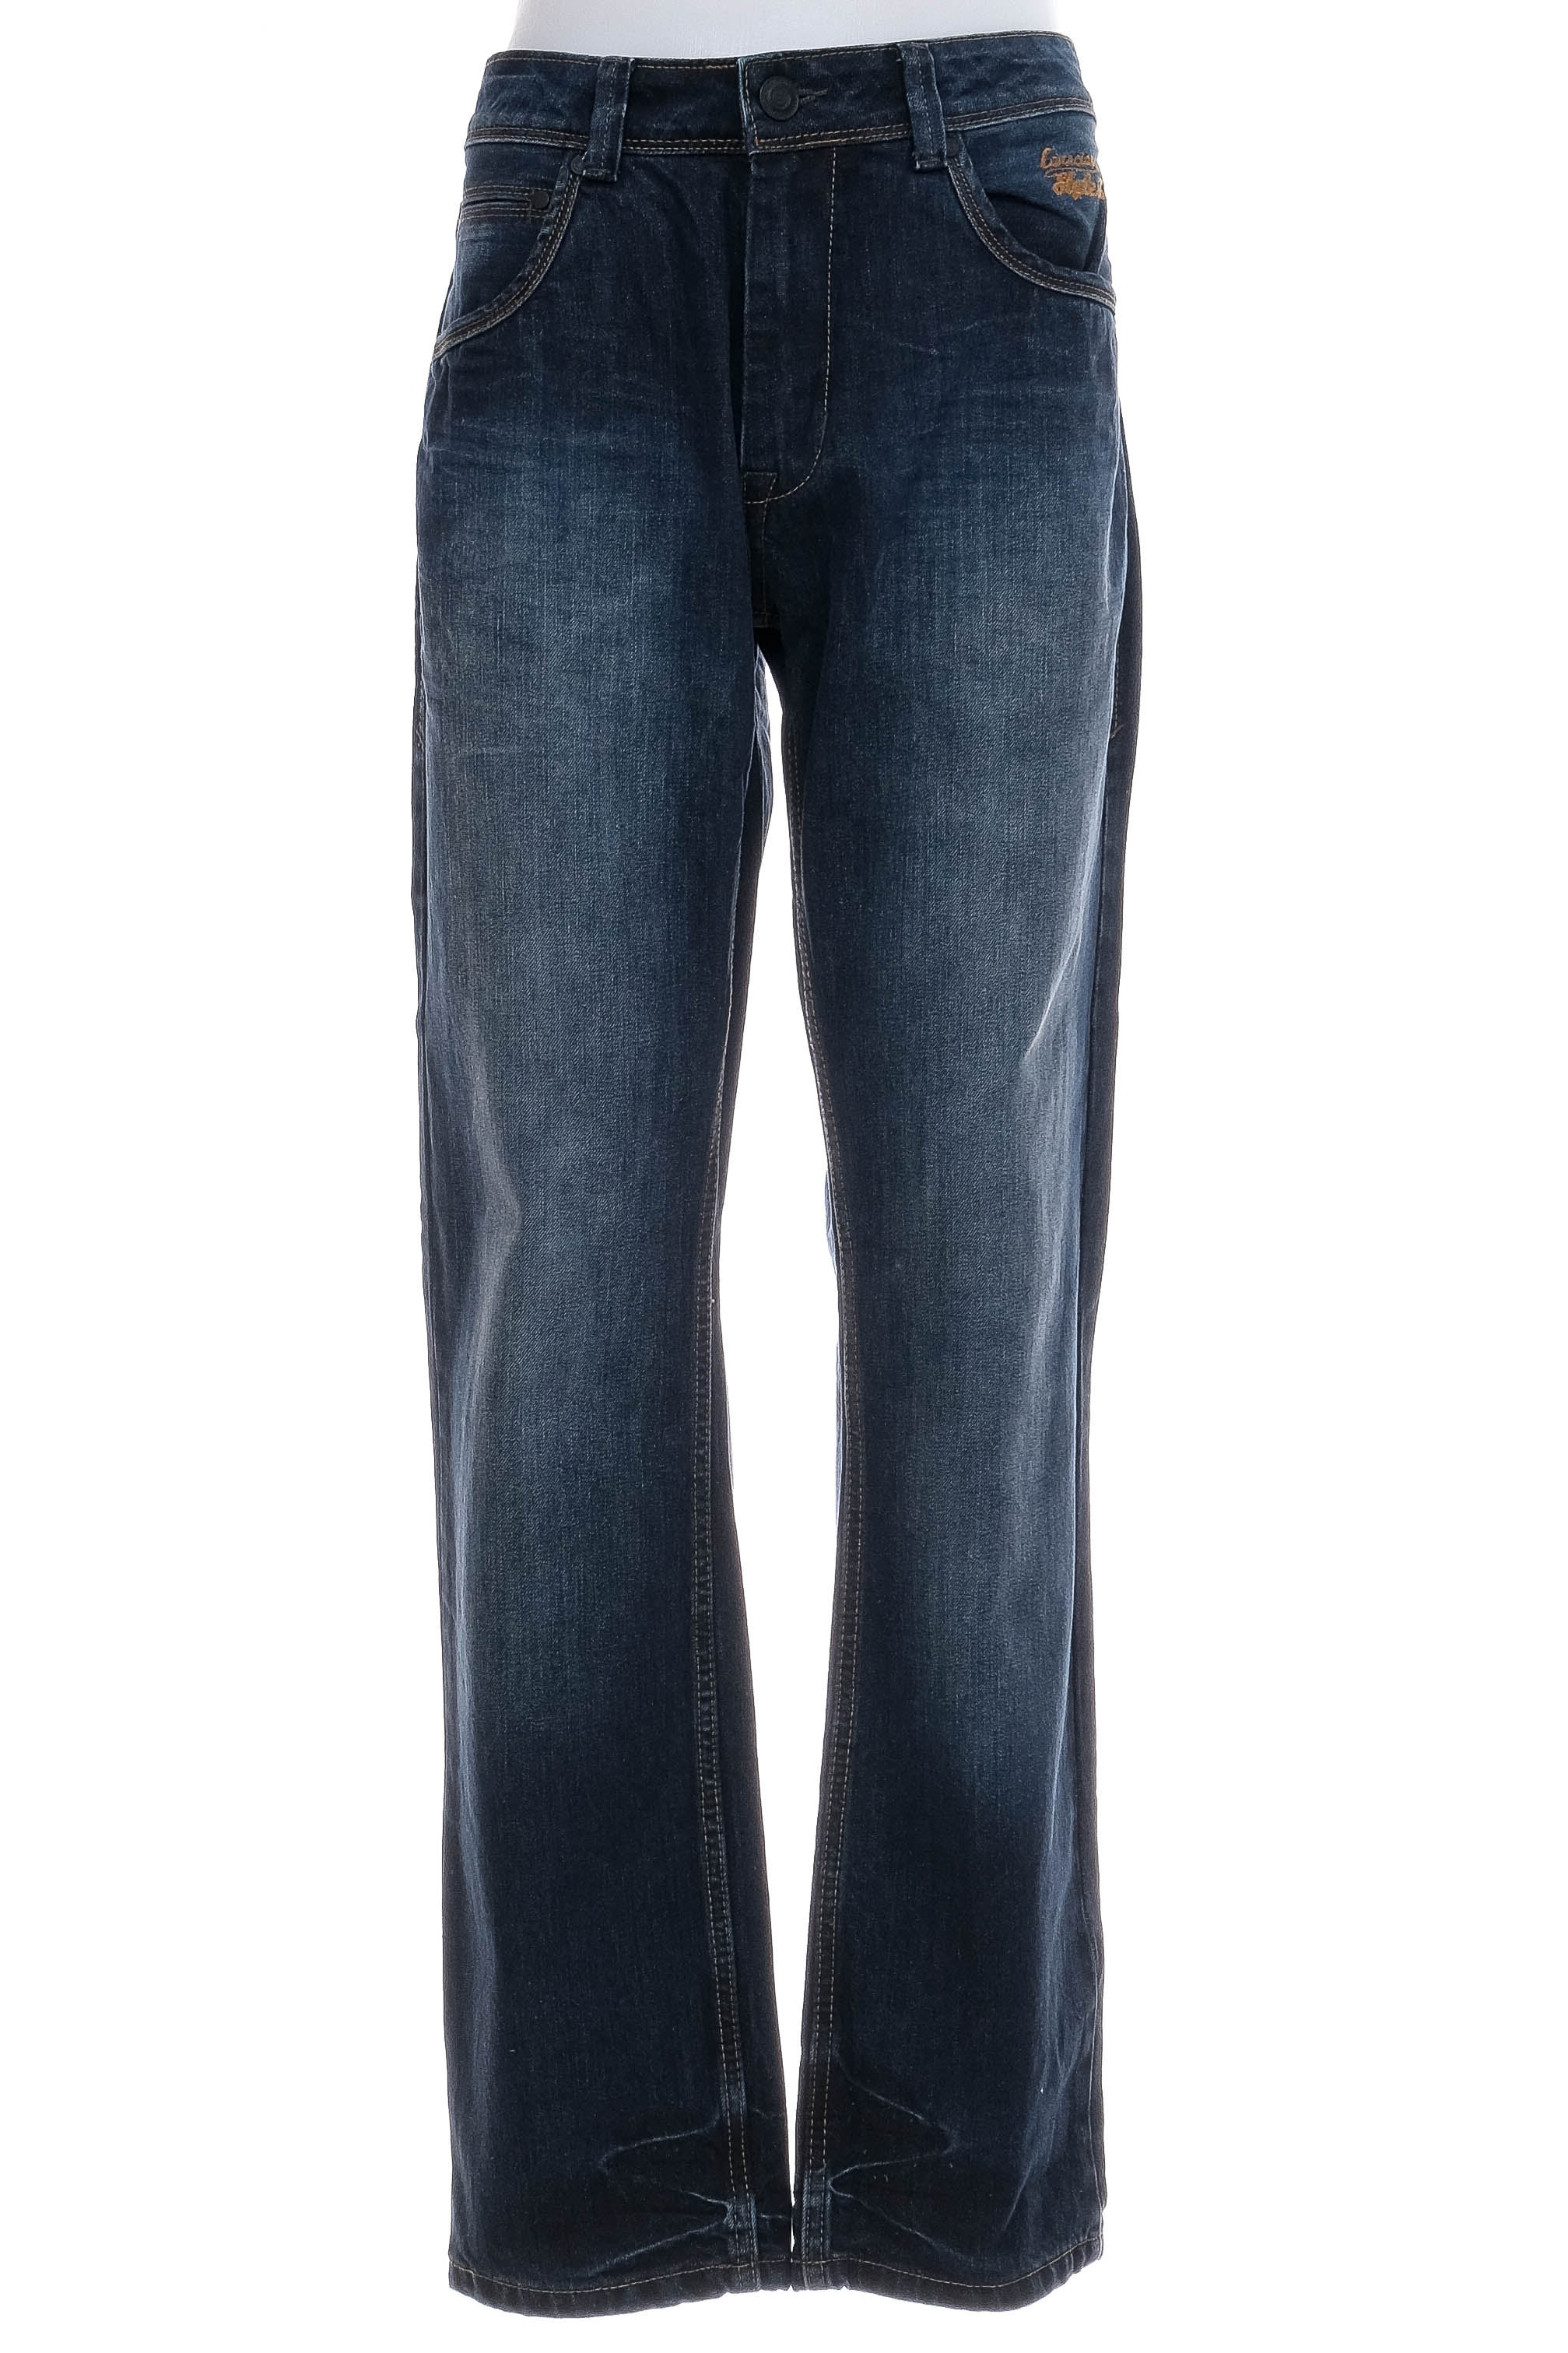 Men's jeans - Tom Tompson - 0